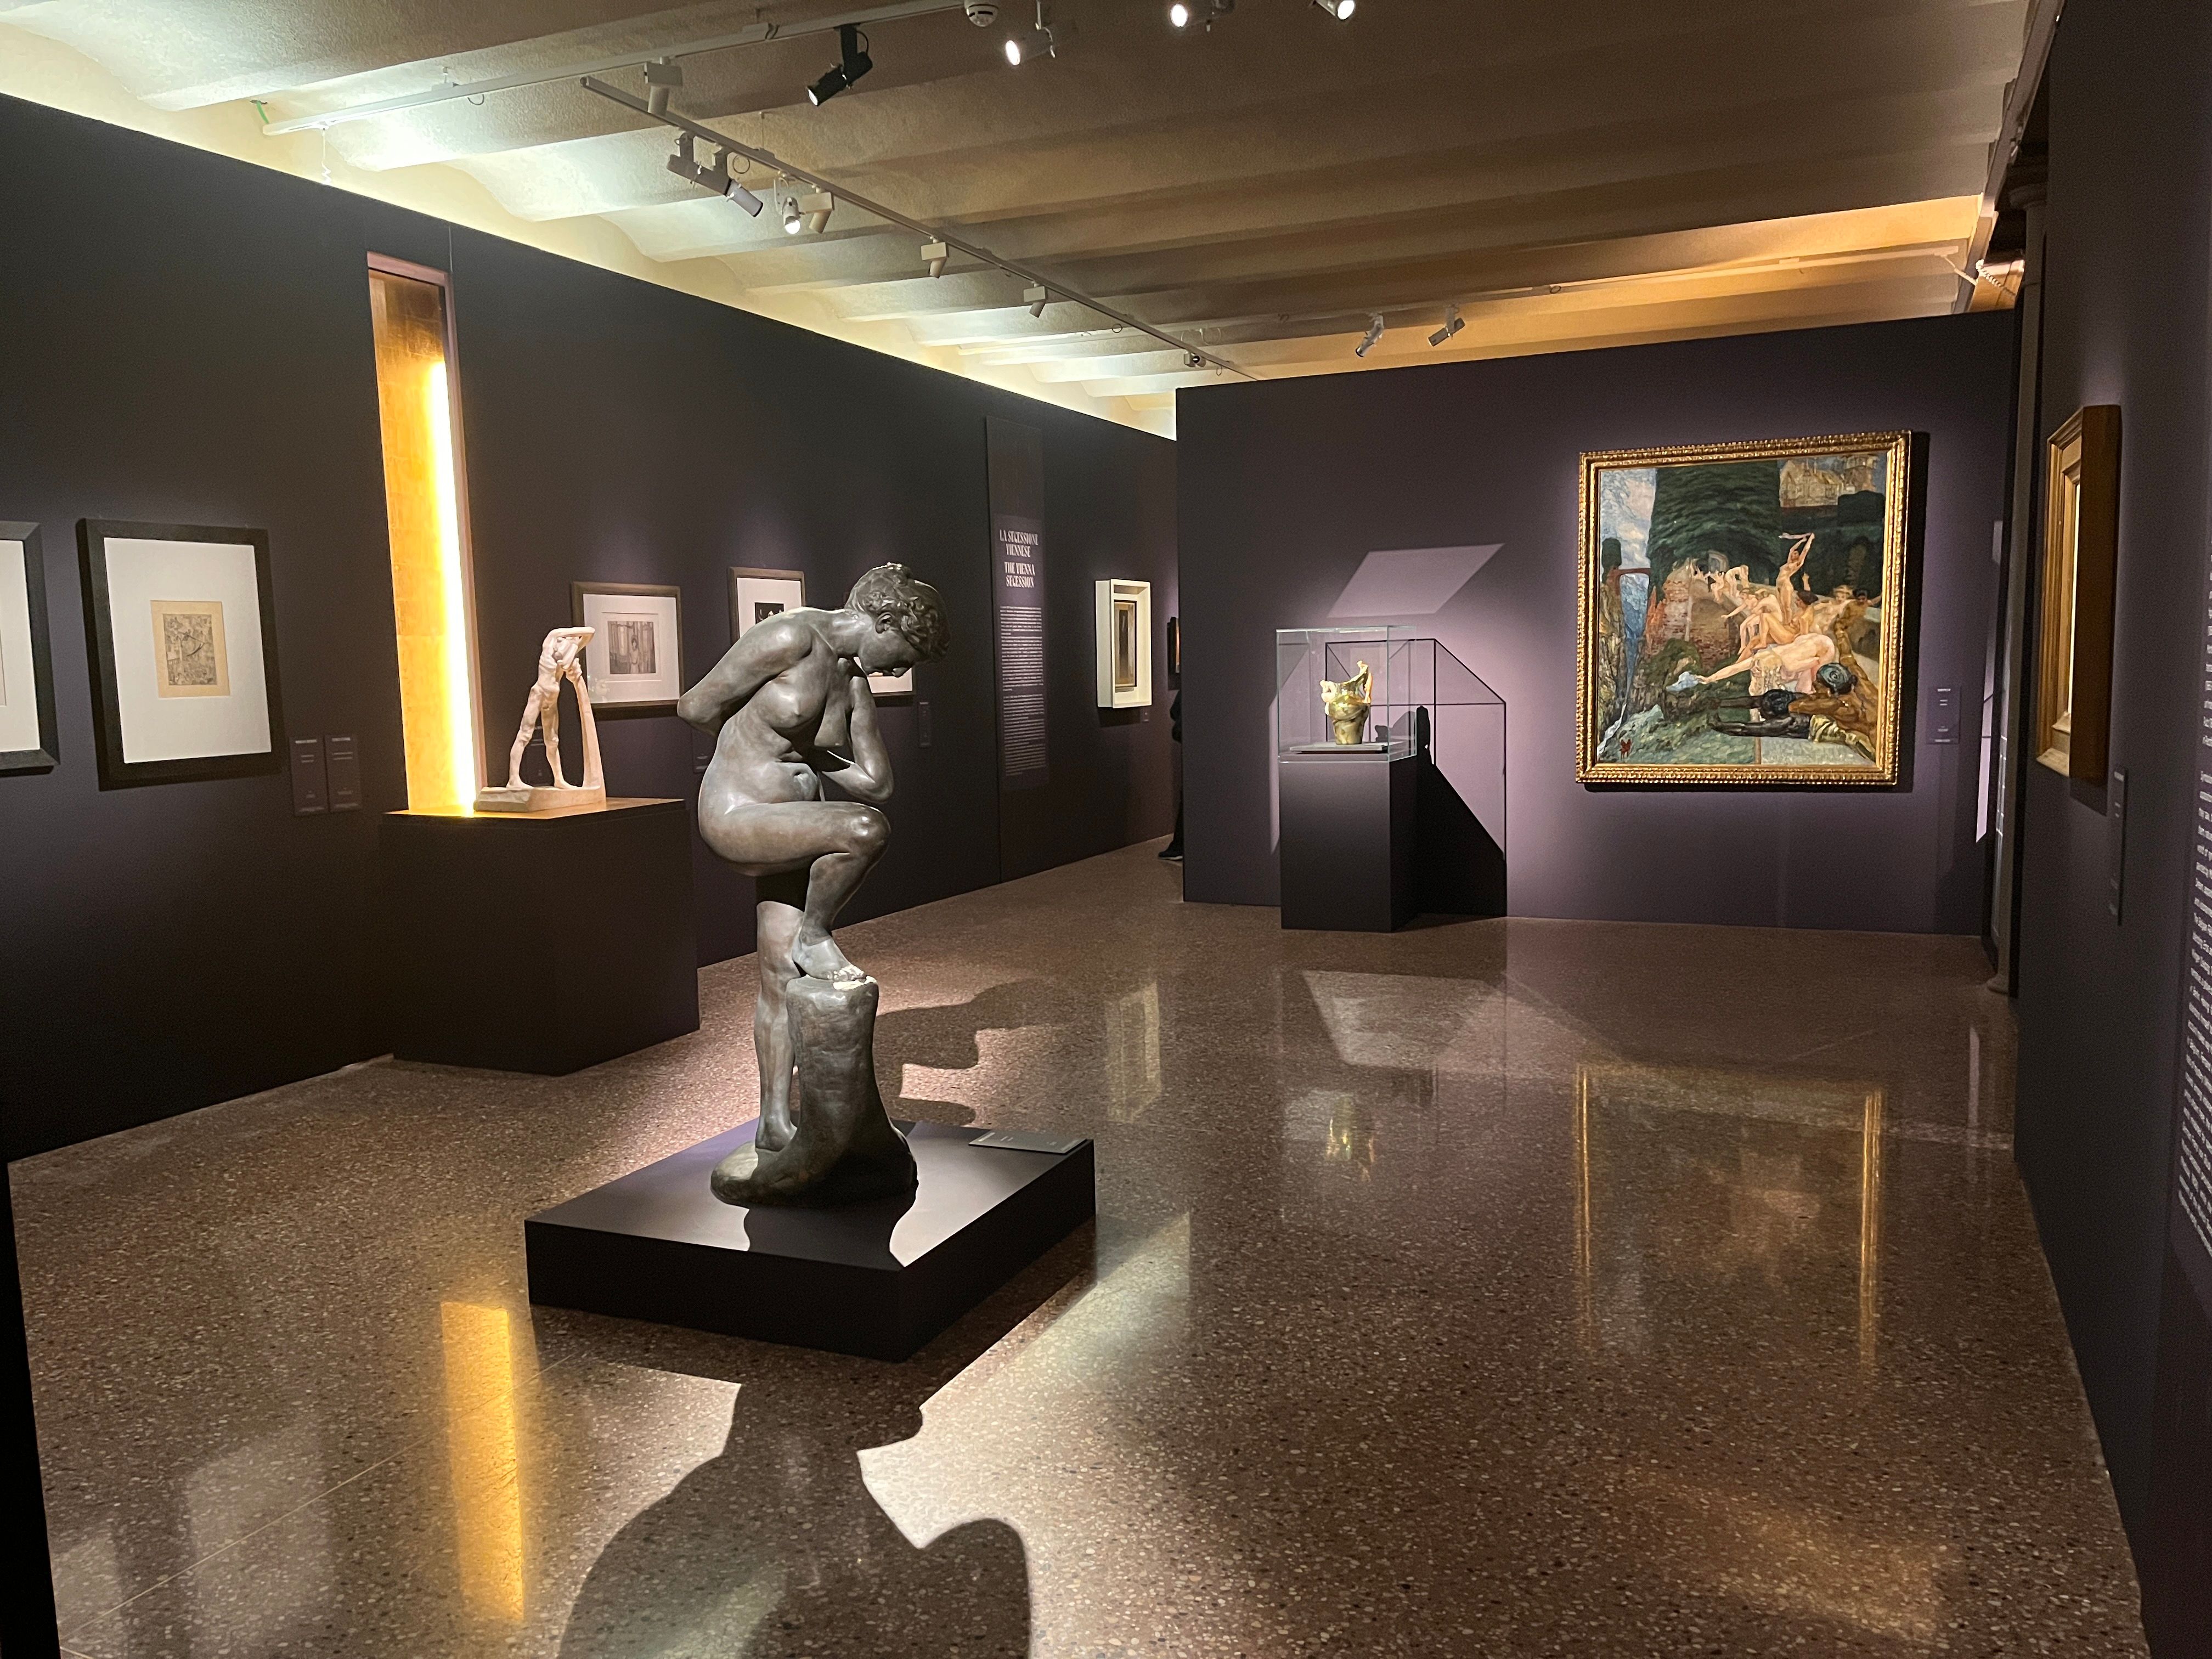 Grandissimo successo per la mostra “Klimt. L’uomo, l’artista, il suo mondo” presso gli spazi della Galleria d'Arte Moderna Ricci Oddi e dell’XNL - Piacenza Contemporanea che chiude a 64.478 visitatori